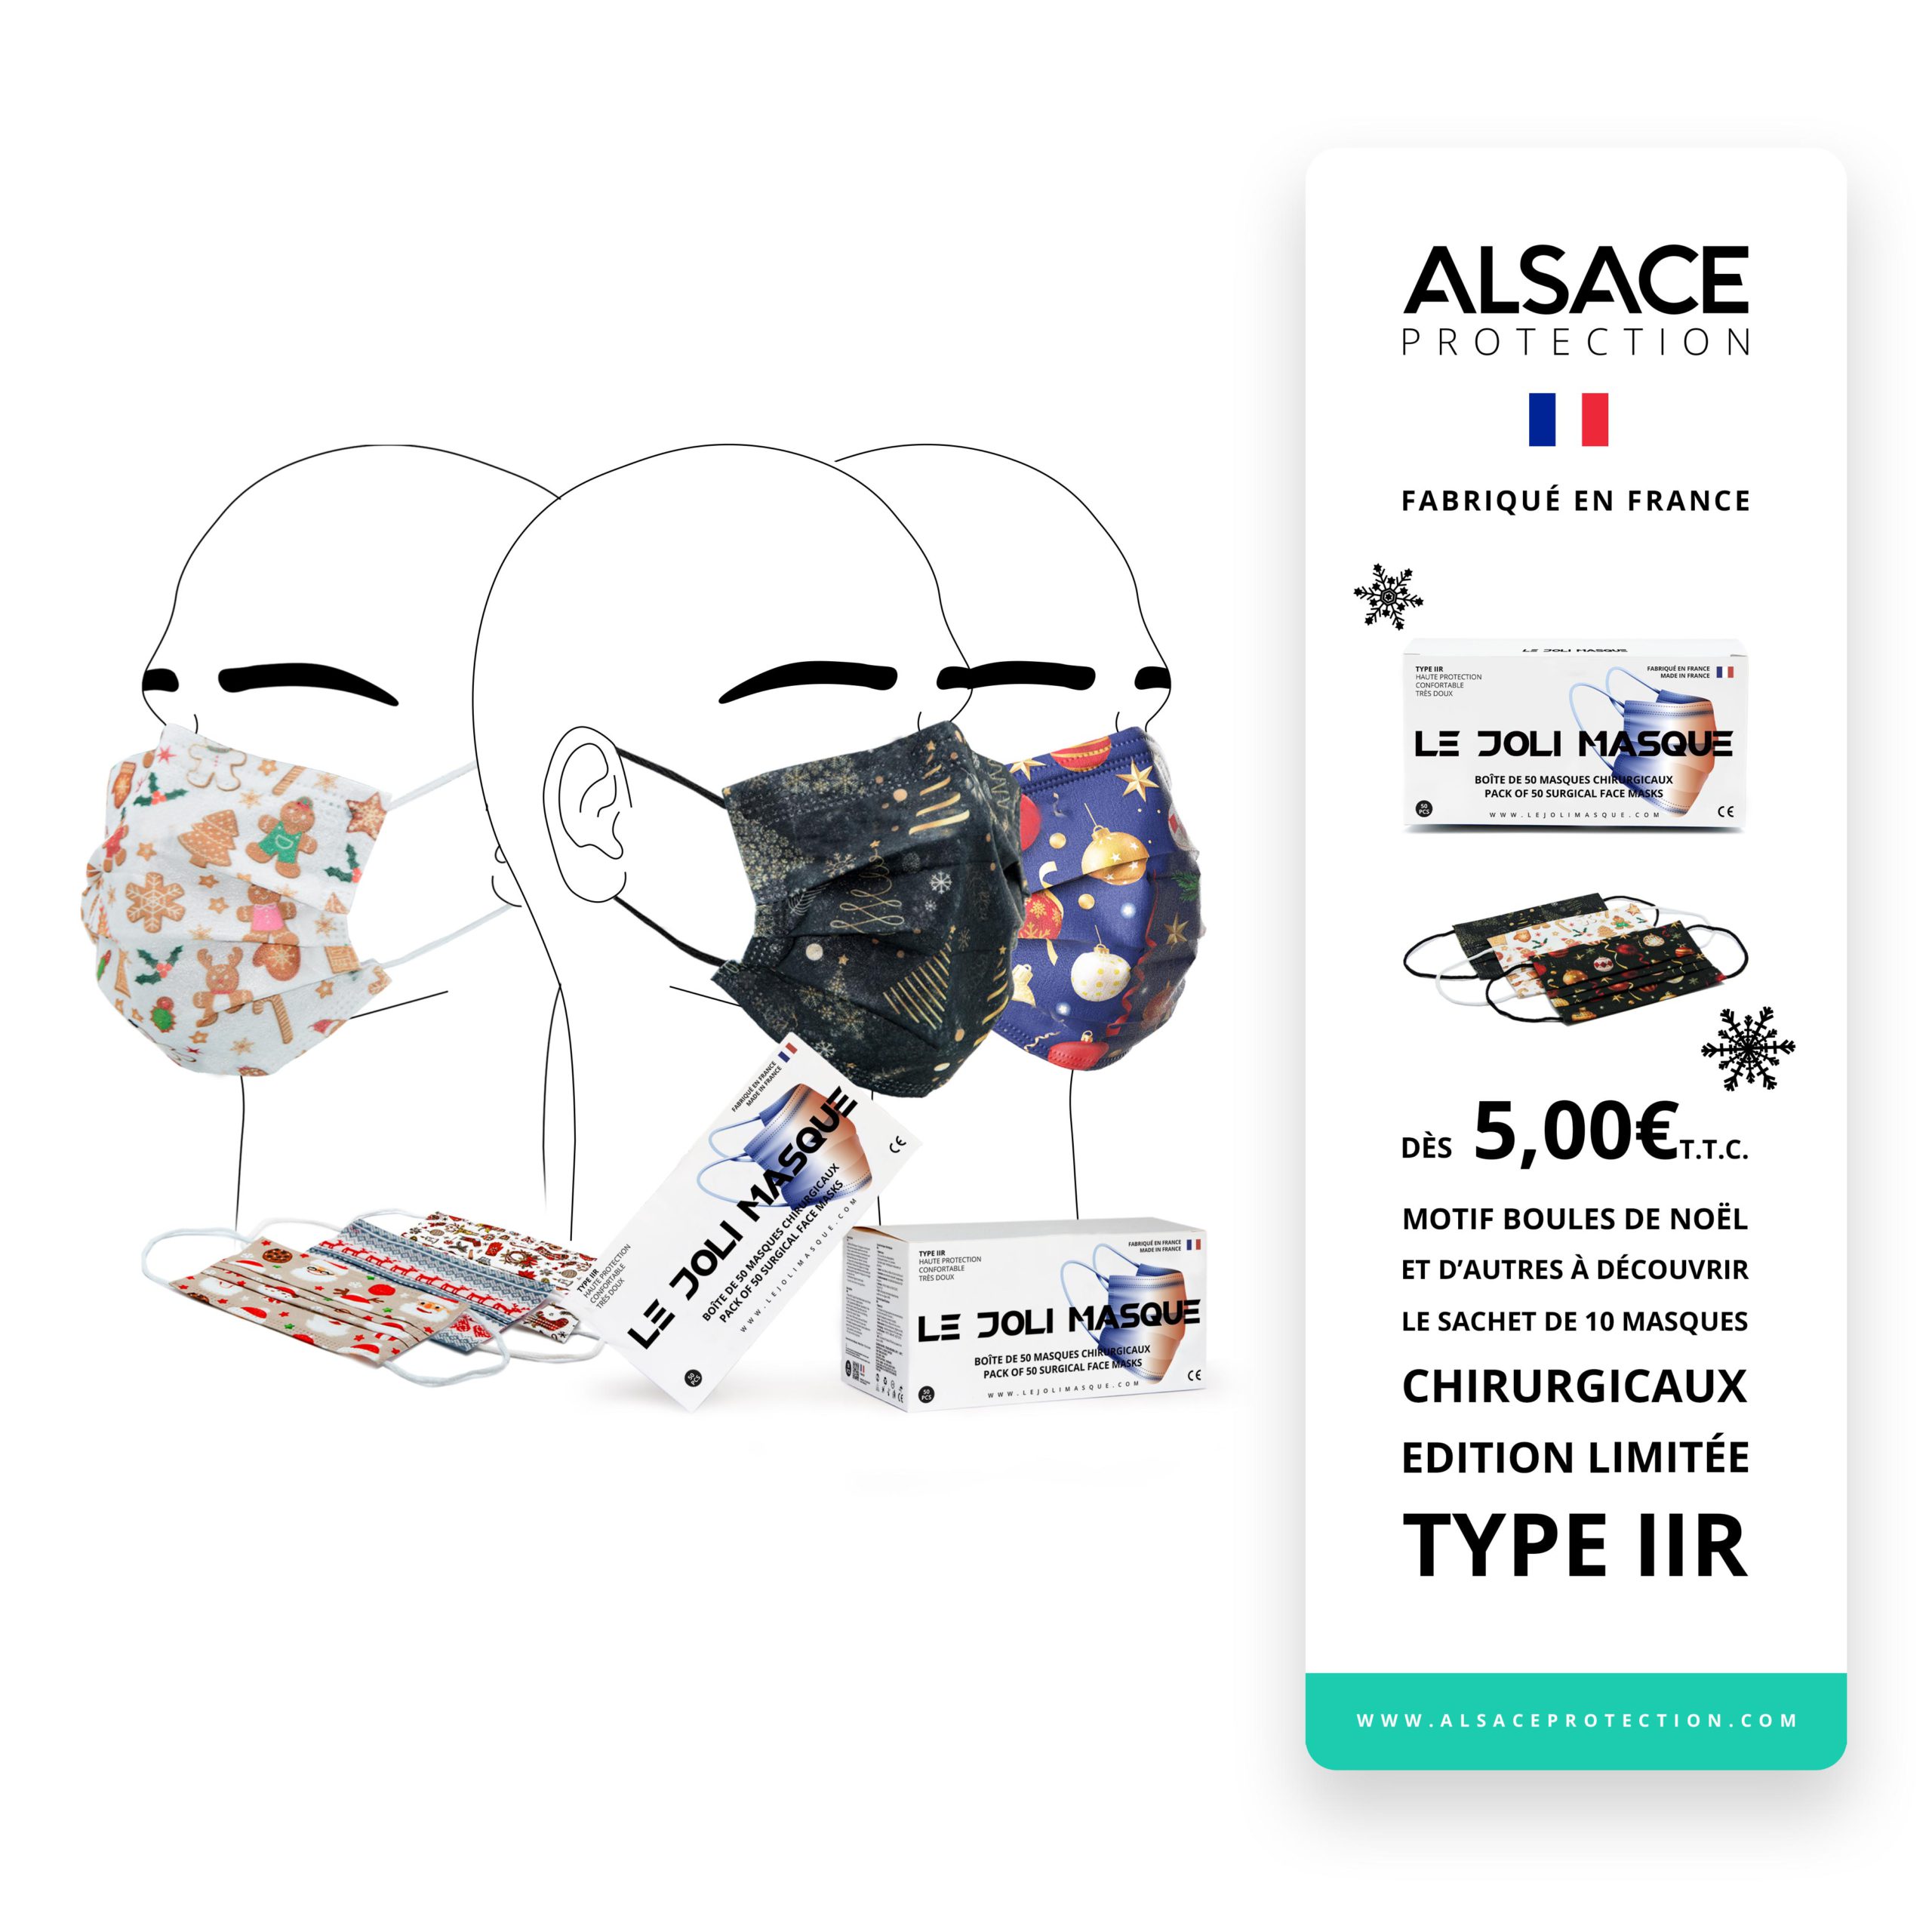 Alsace Protection  Sachet de 10 Masques Chirurgicaux - Fabriqué en France  - Type IIR